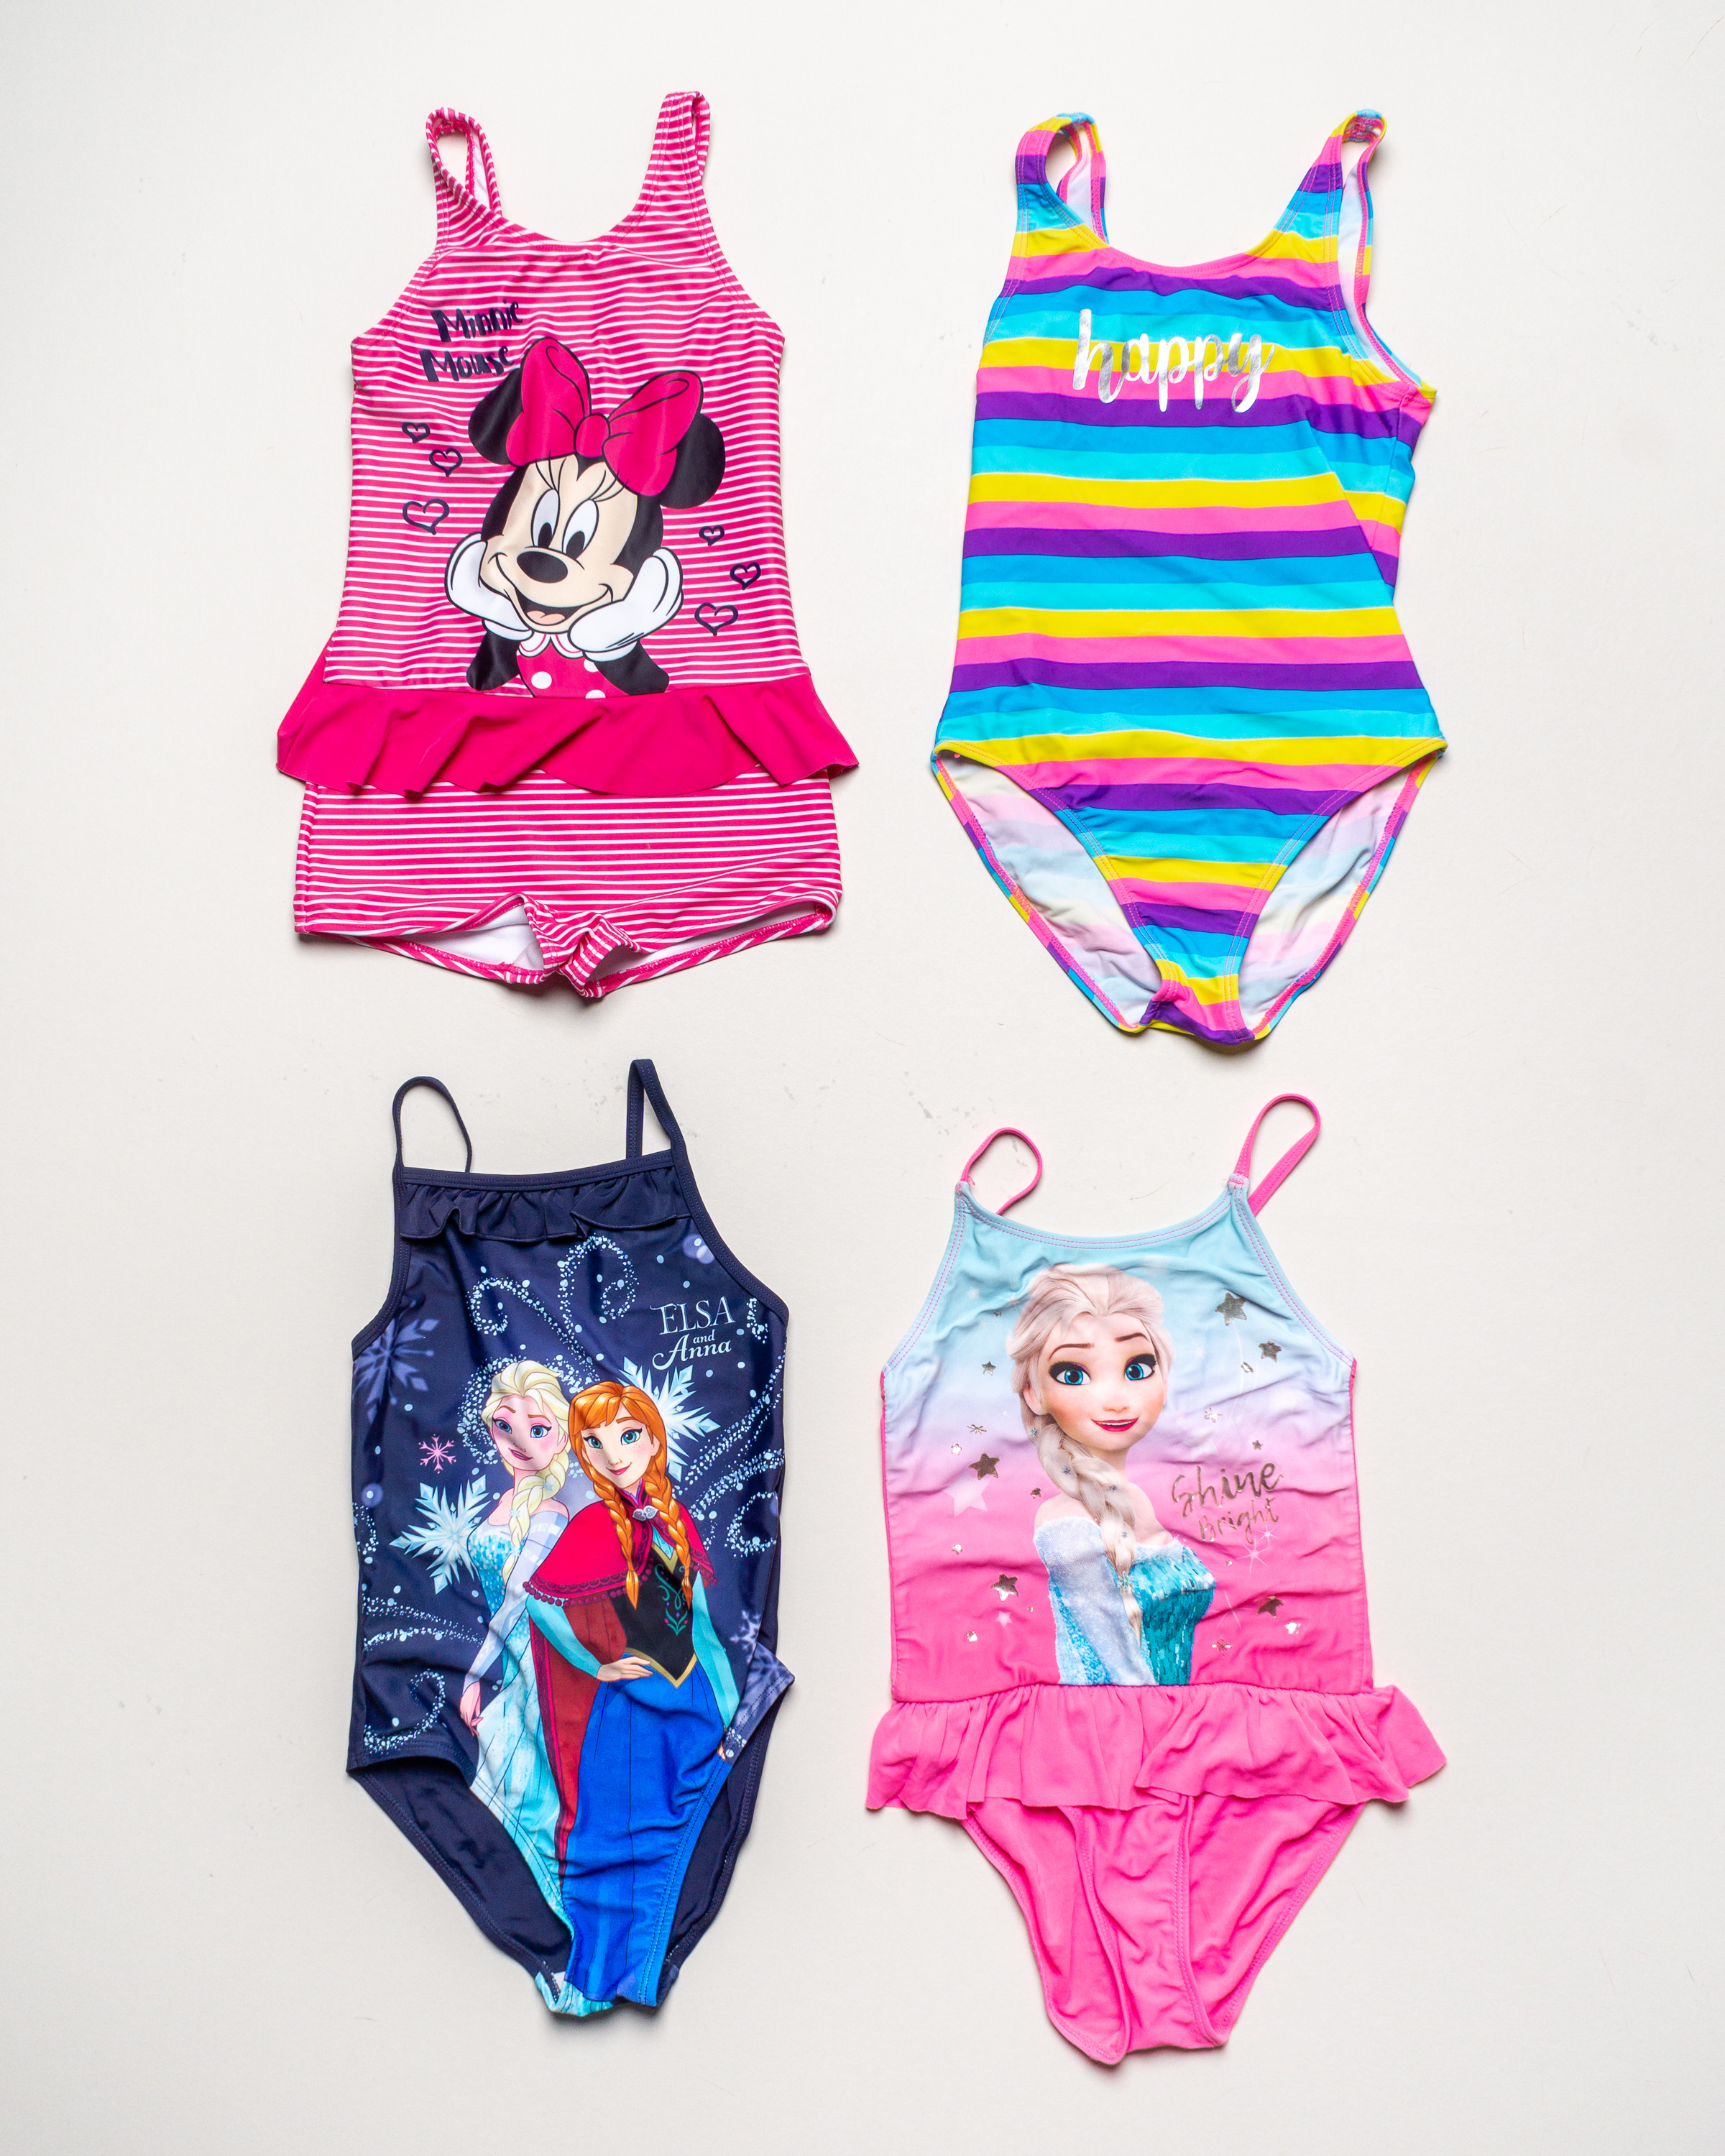 1x Badekleidung Gr. 122/128 – Schwimmsachen Badeanzug Elsa Anna Frozen Minnie Mouse